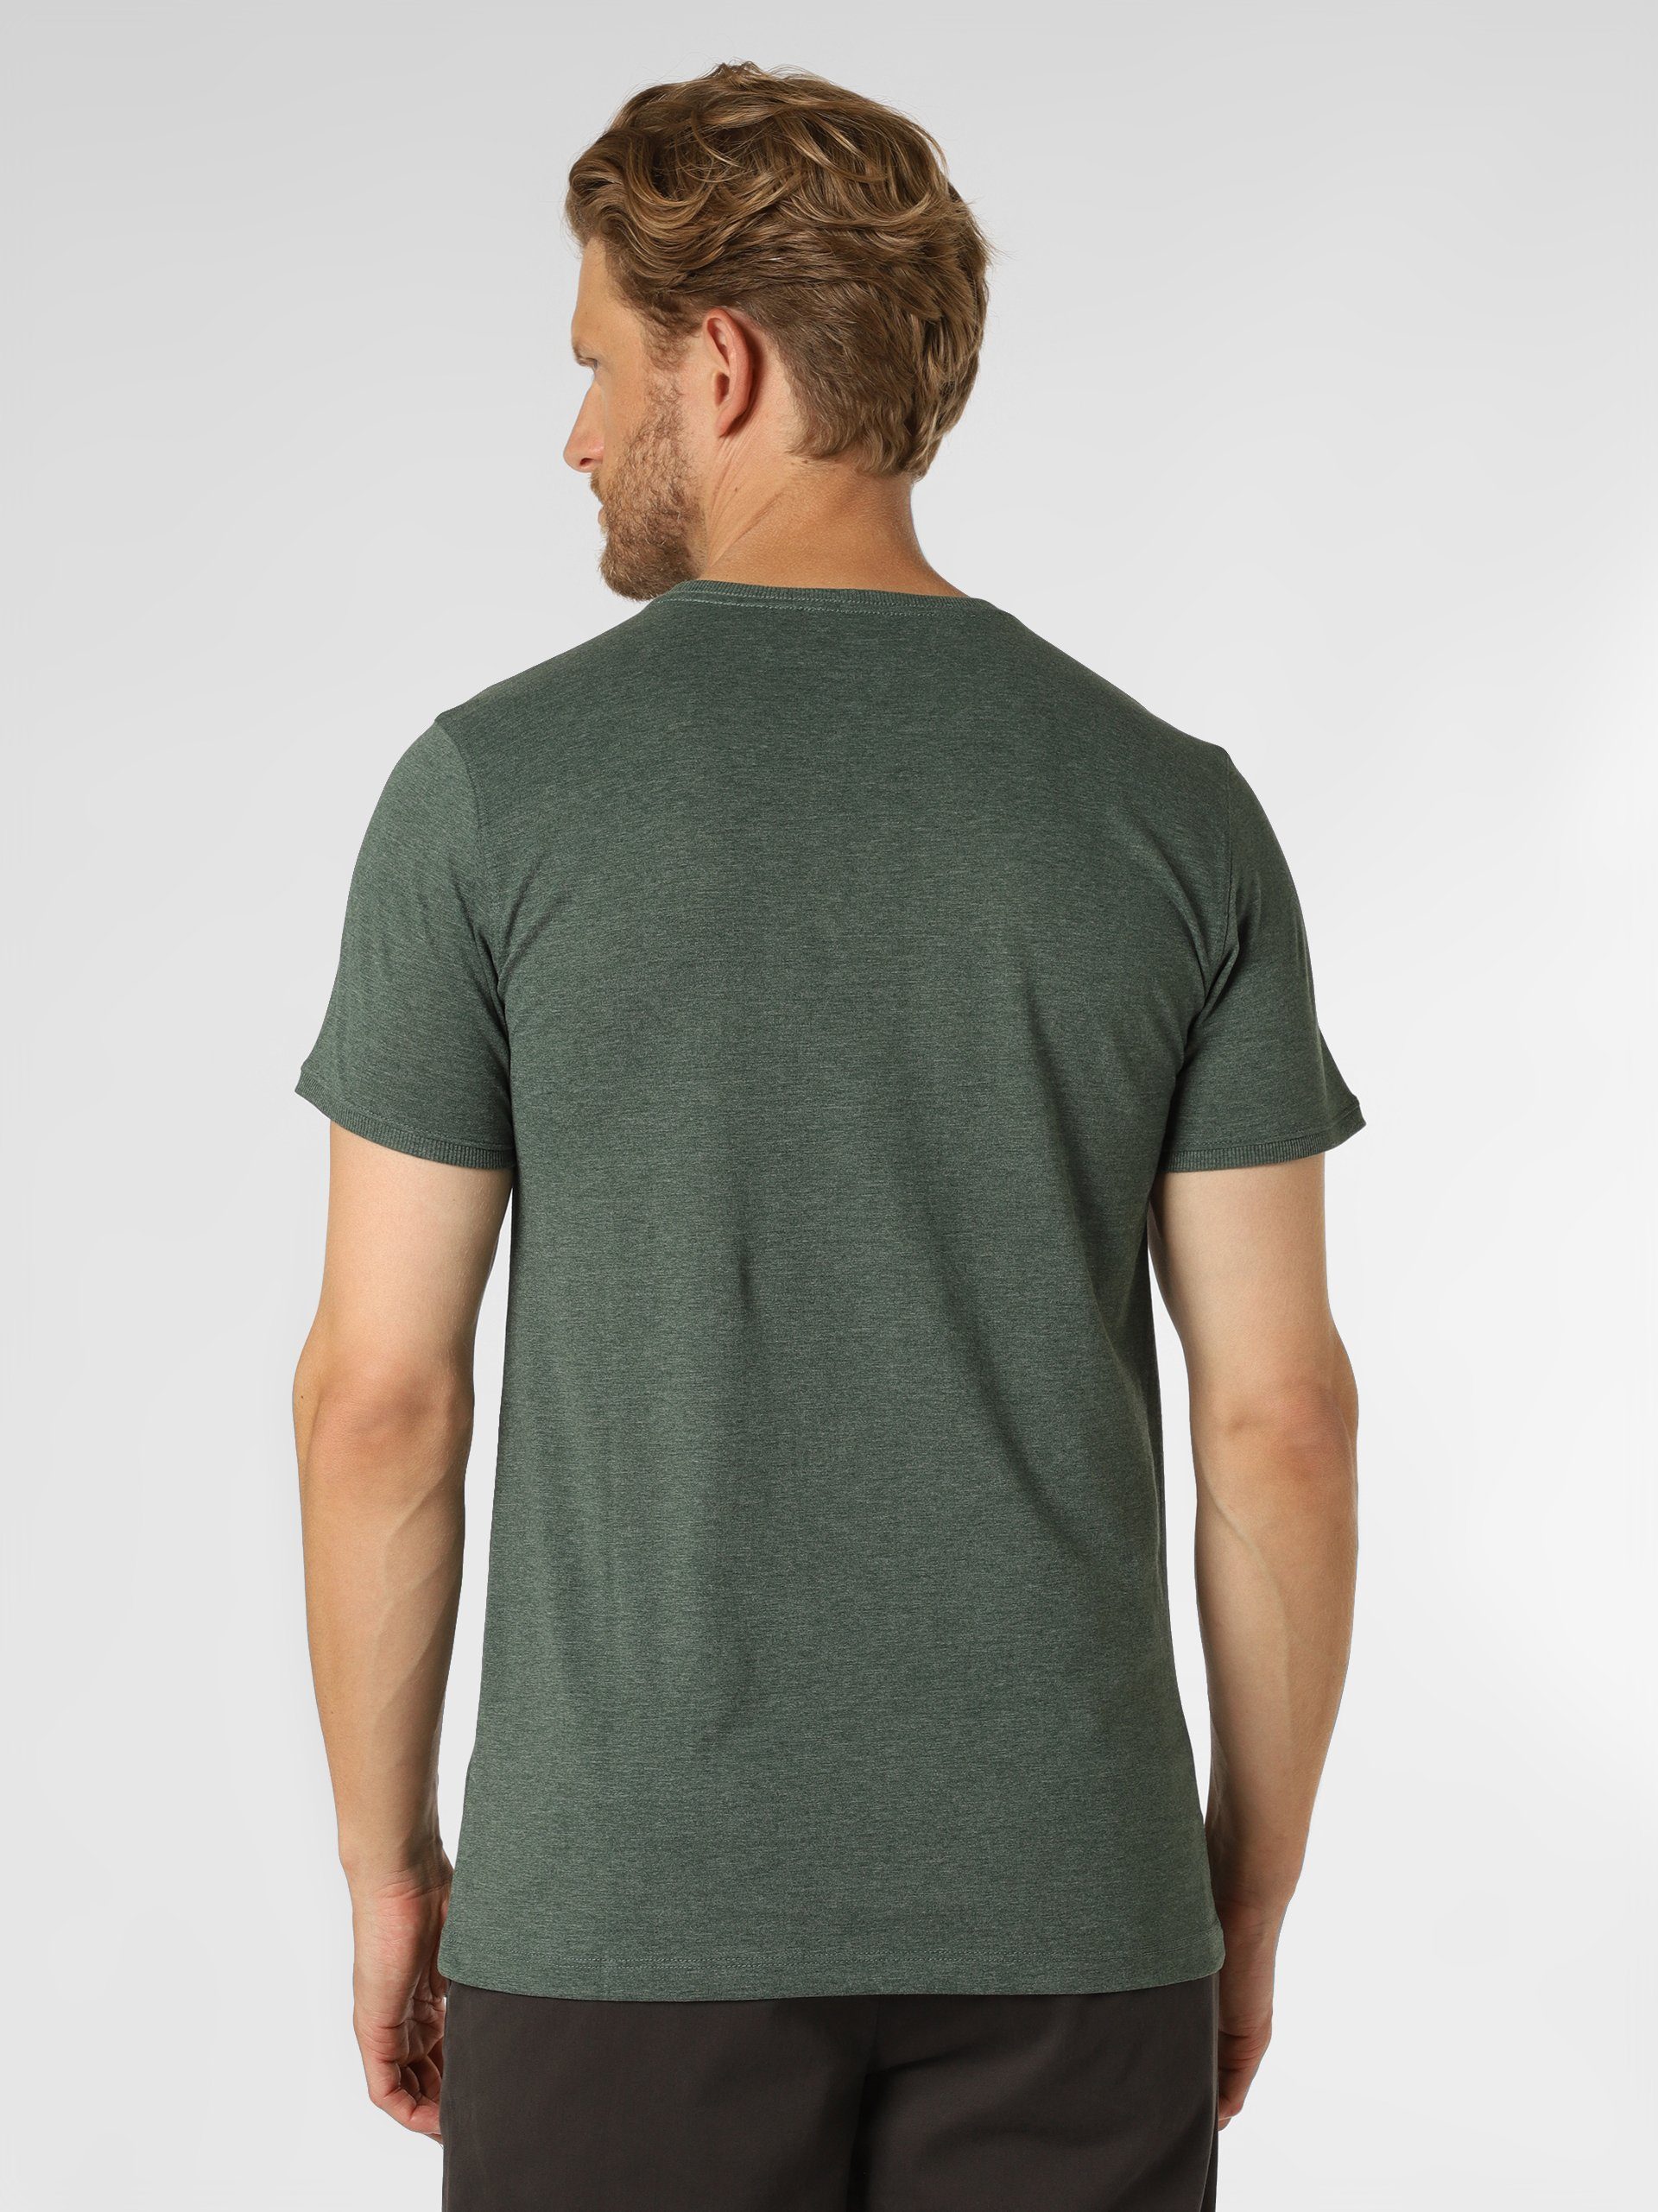 grün T-Shirt Sundström Nils